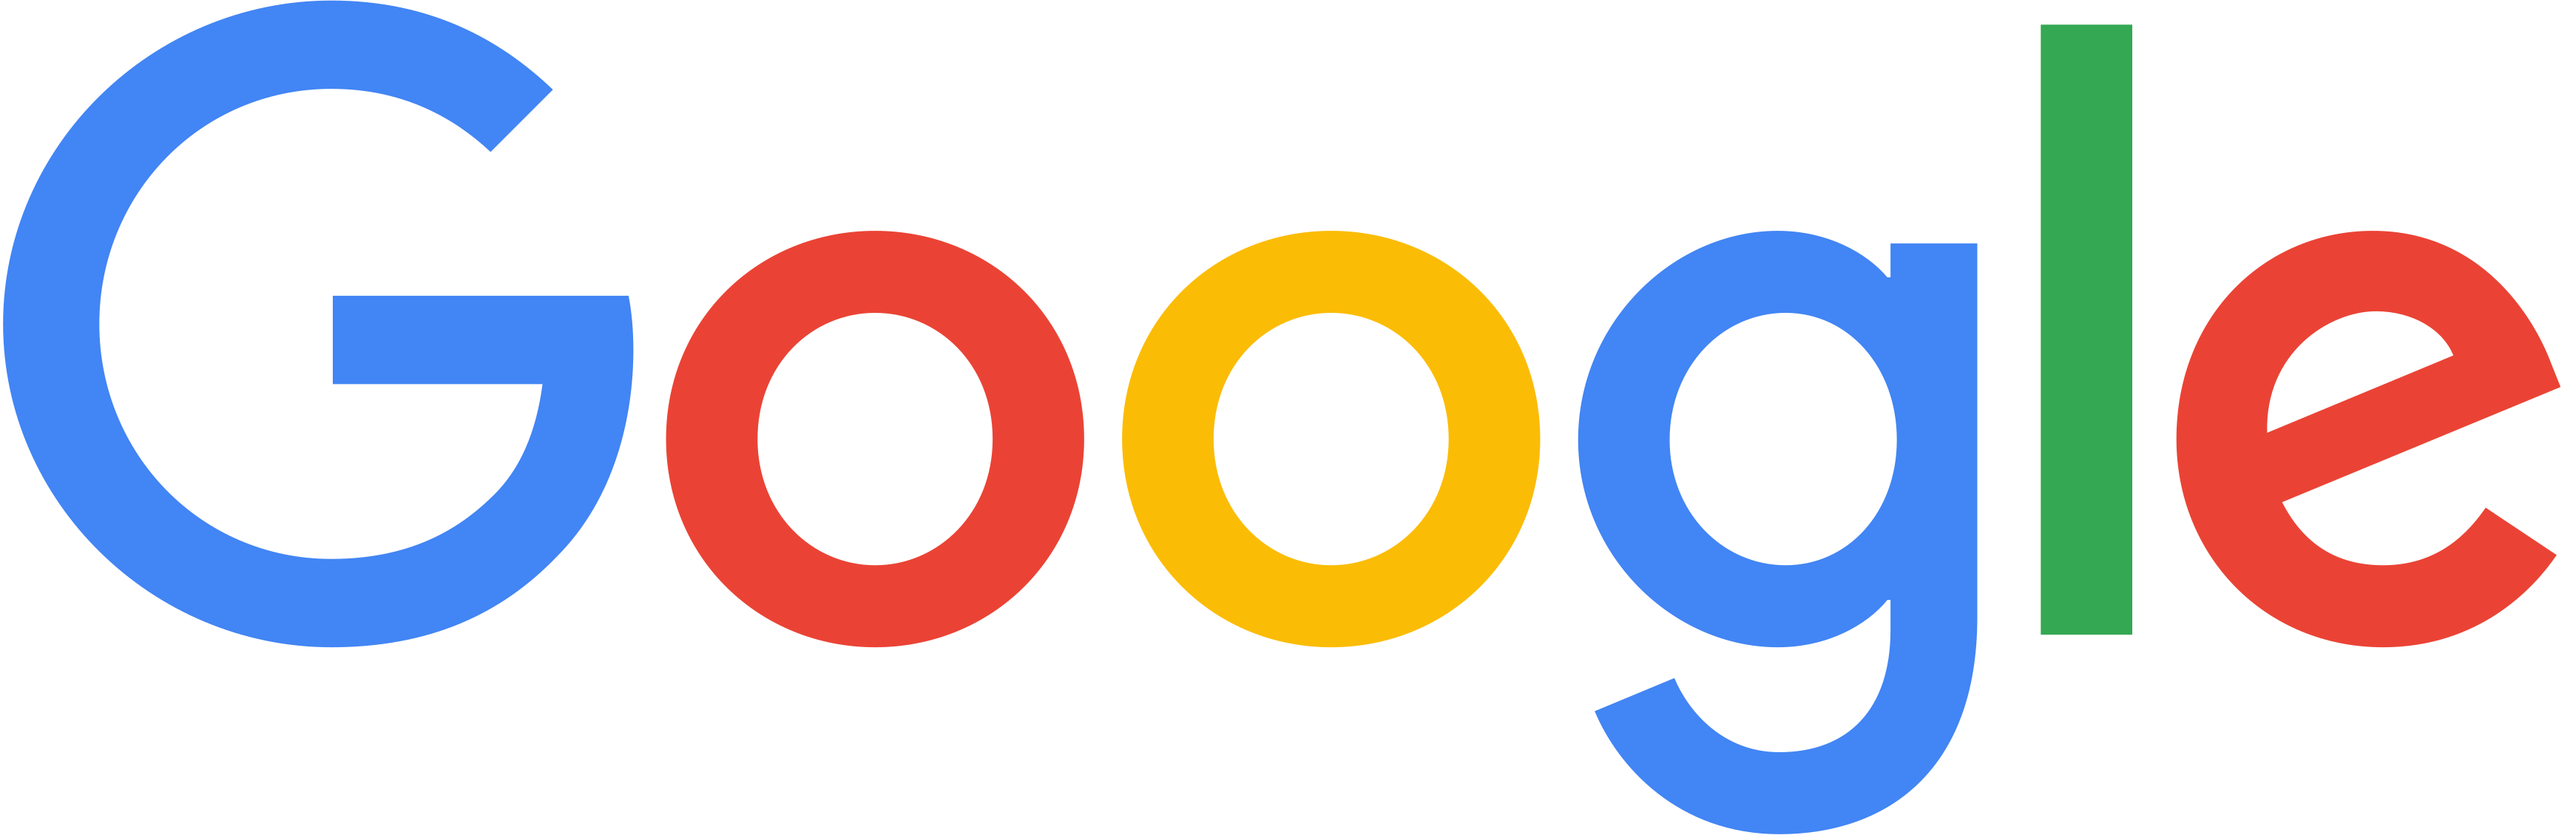 Write/Speak/Code sponsor Google logo